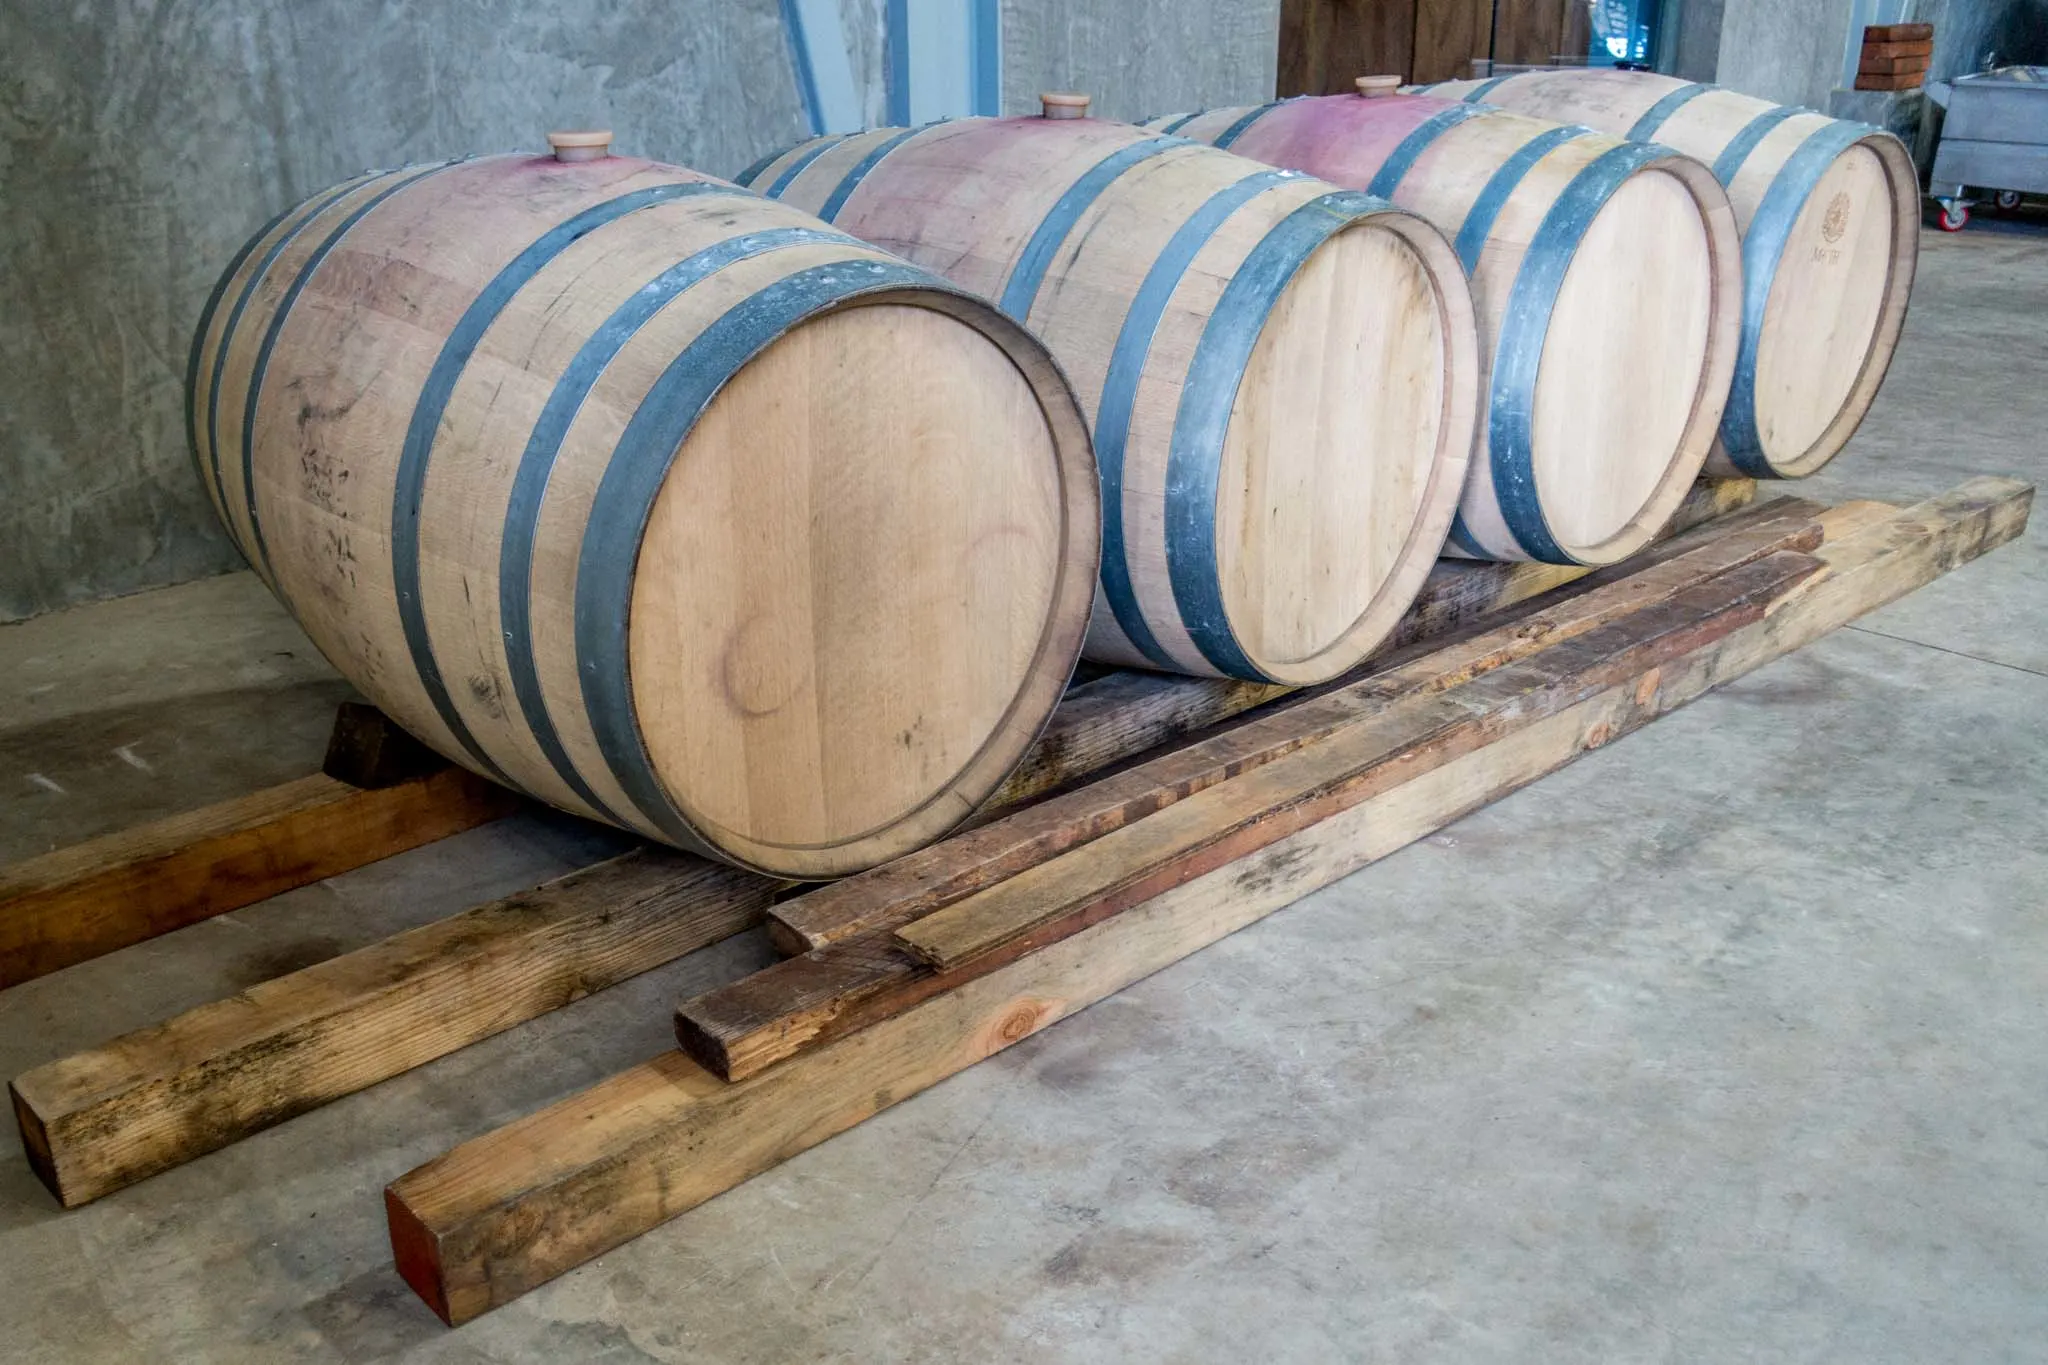 Oak aging barrels at a winery